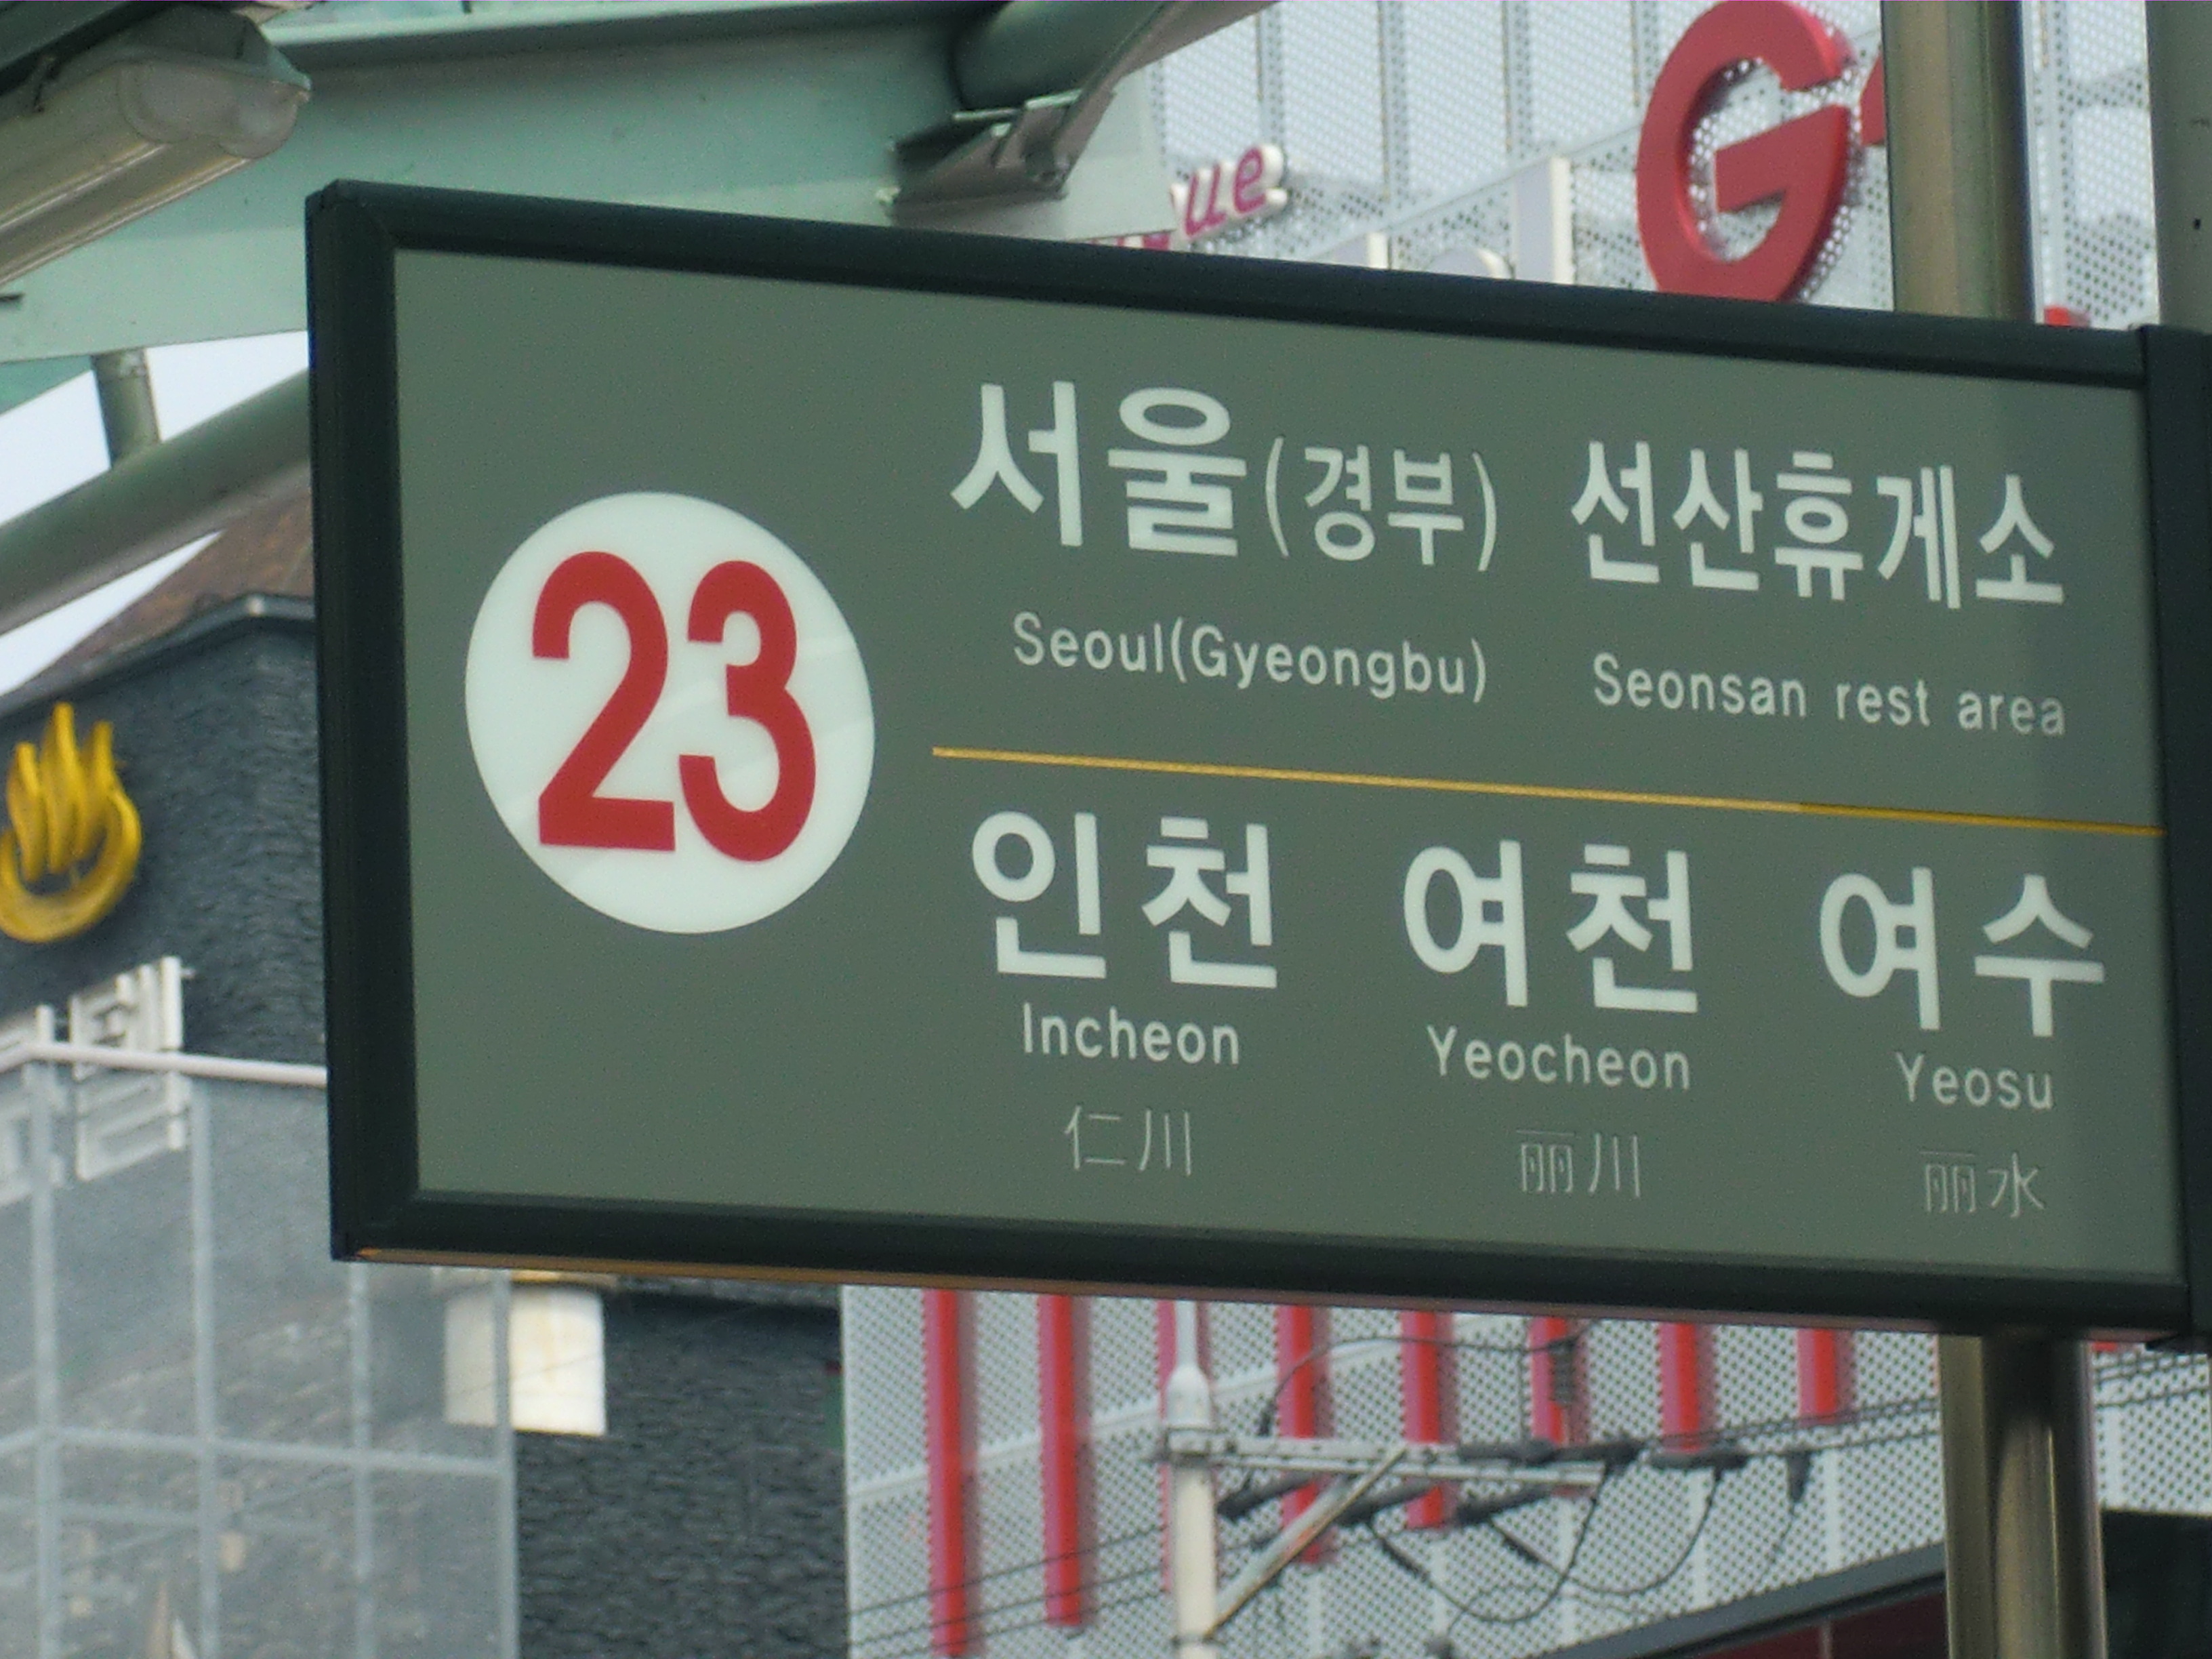 リニューアルの結果 漢字が中国語に 釜山西部市外バスターミナル プサンソブシウェボストミノル の口コミ Q A 韓国釜山観光 プサンナビ